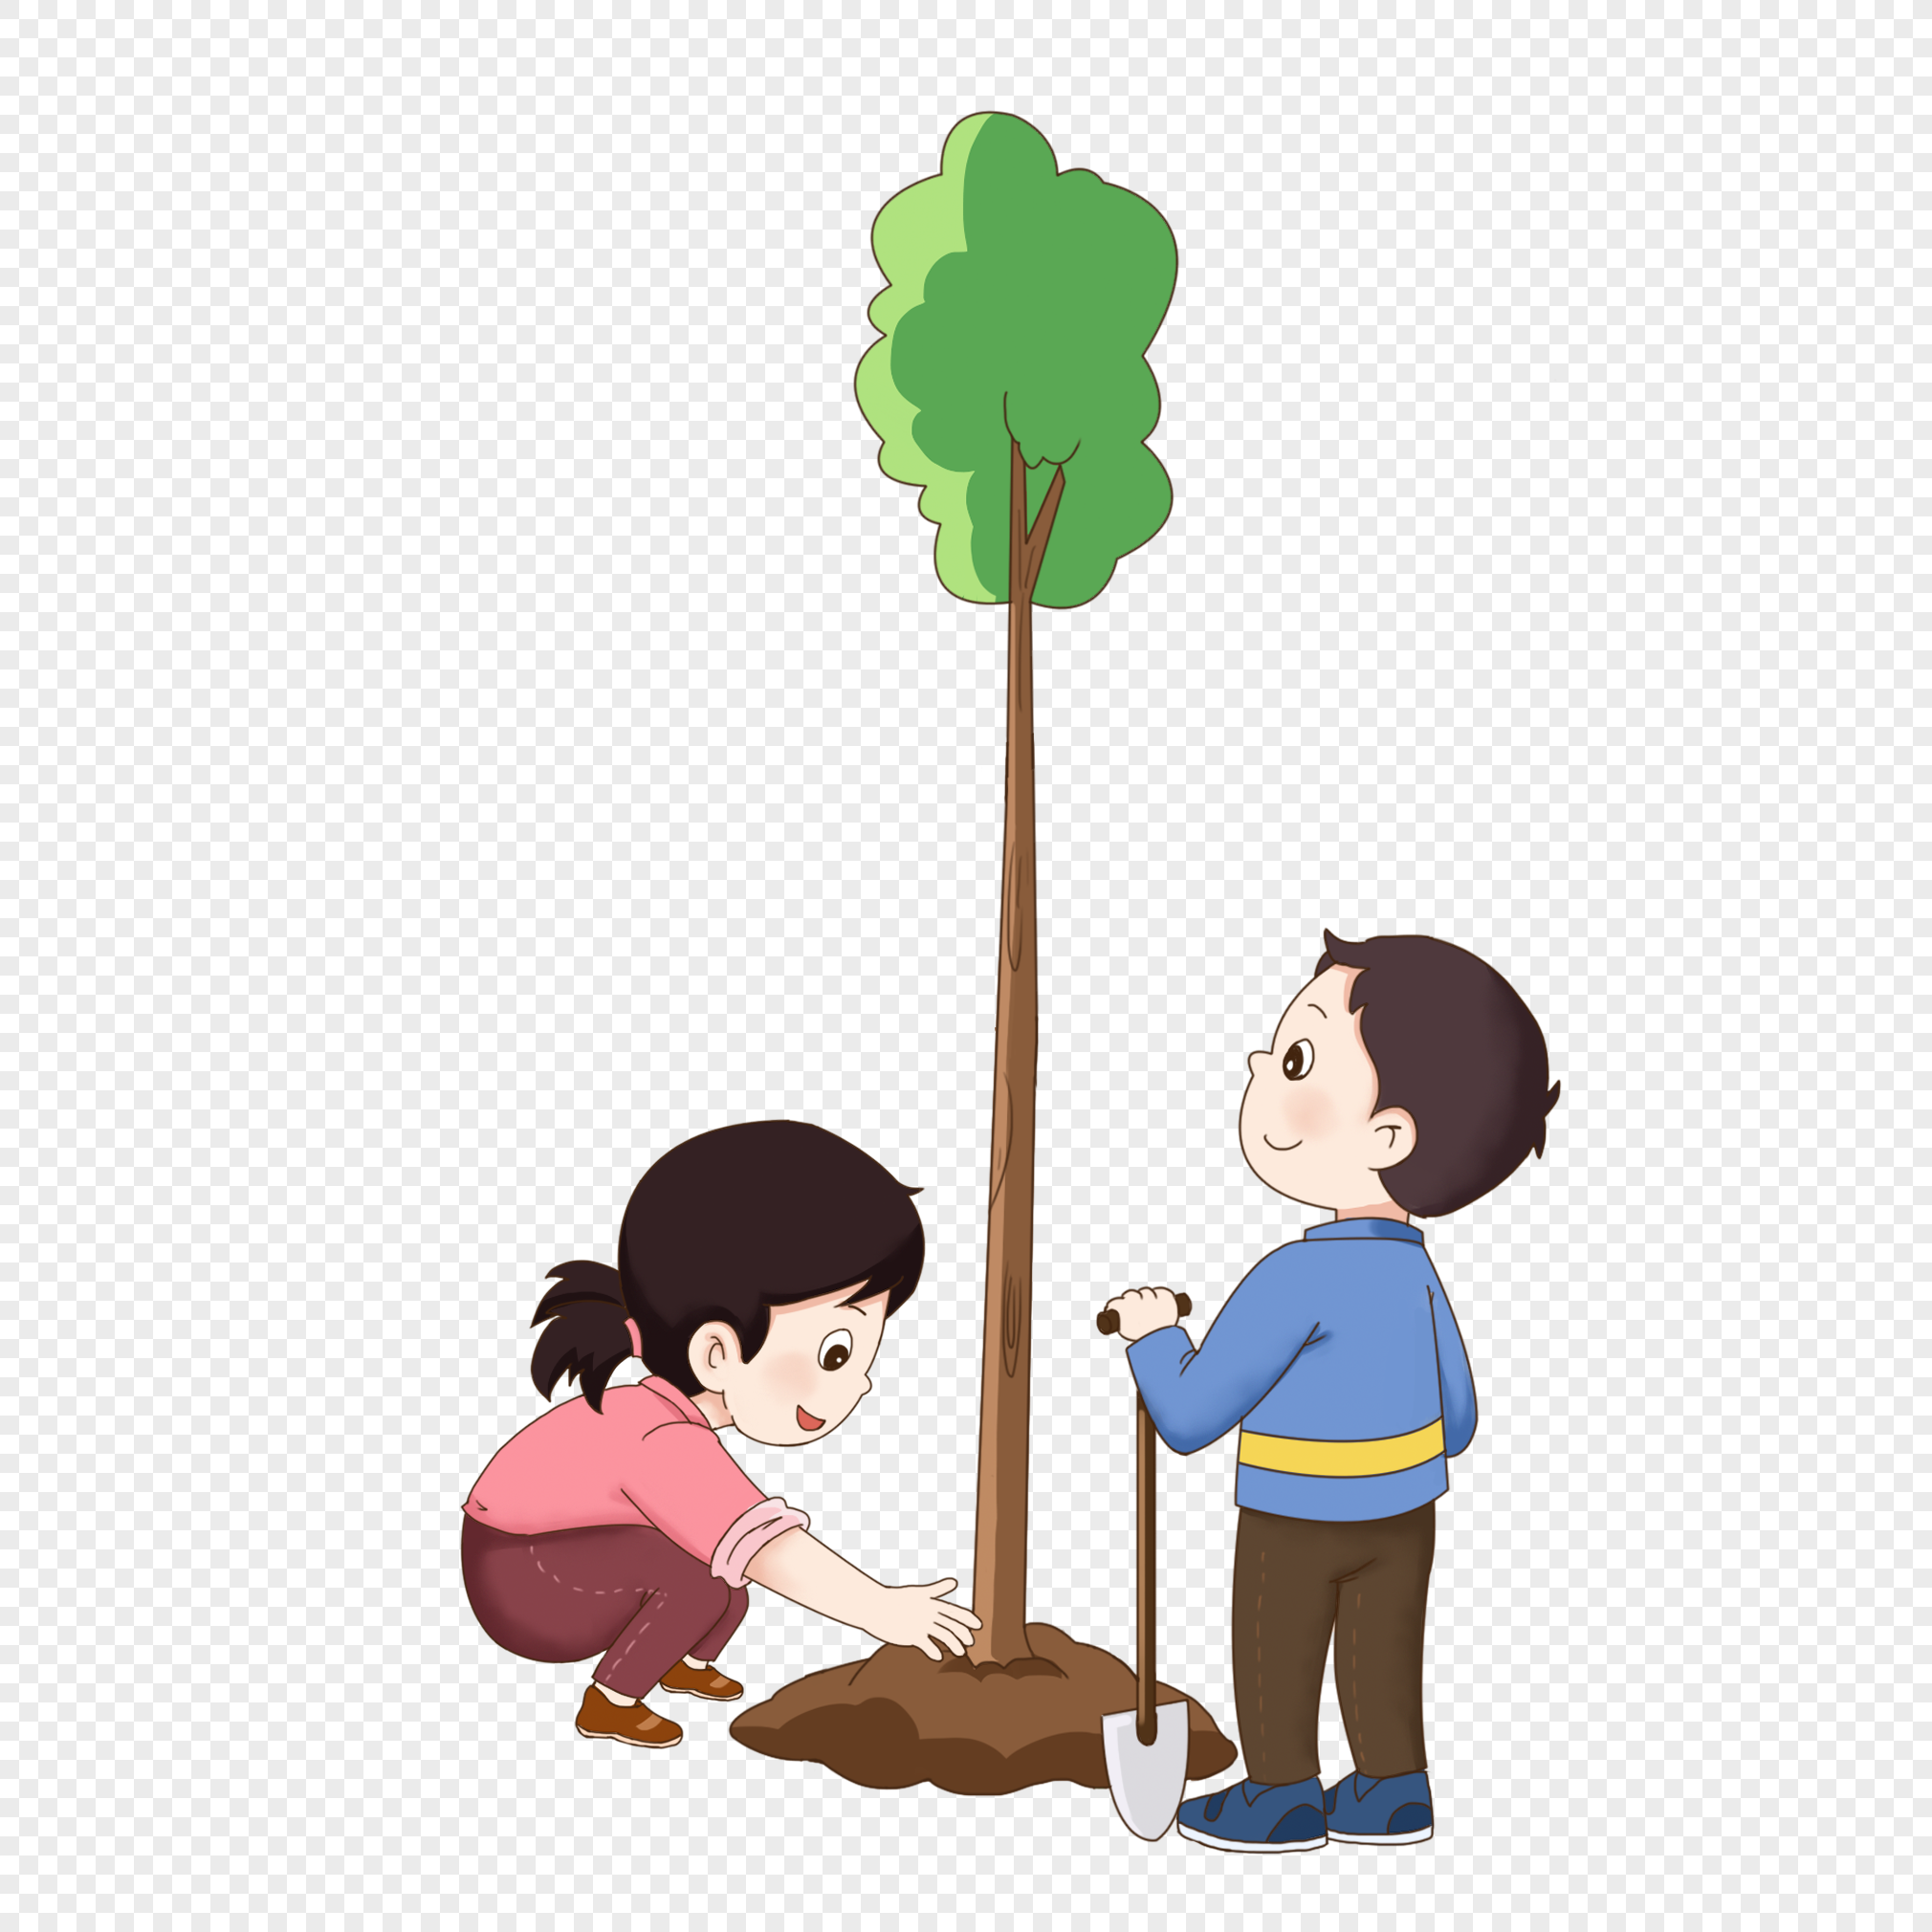 Посади дерево дружбы. Дети сажают деревья. Дети сажают деревья на прозрачном фоне. Высадка деревьев иллюстрация.